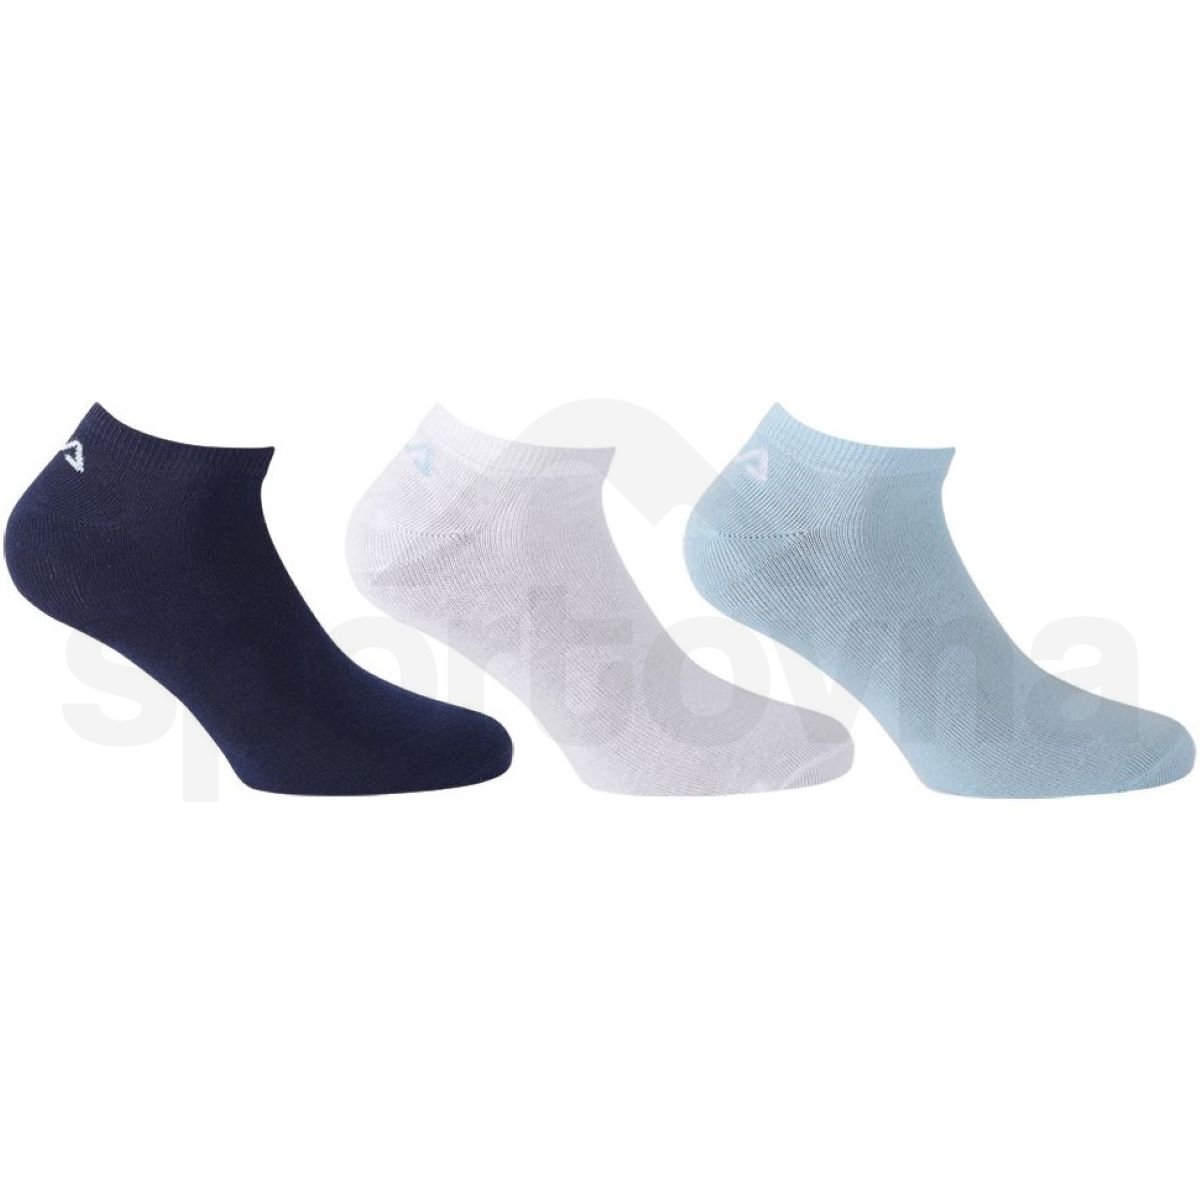 Ponožky Fila Invisible Plain 3 Pack - modrá/bílá